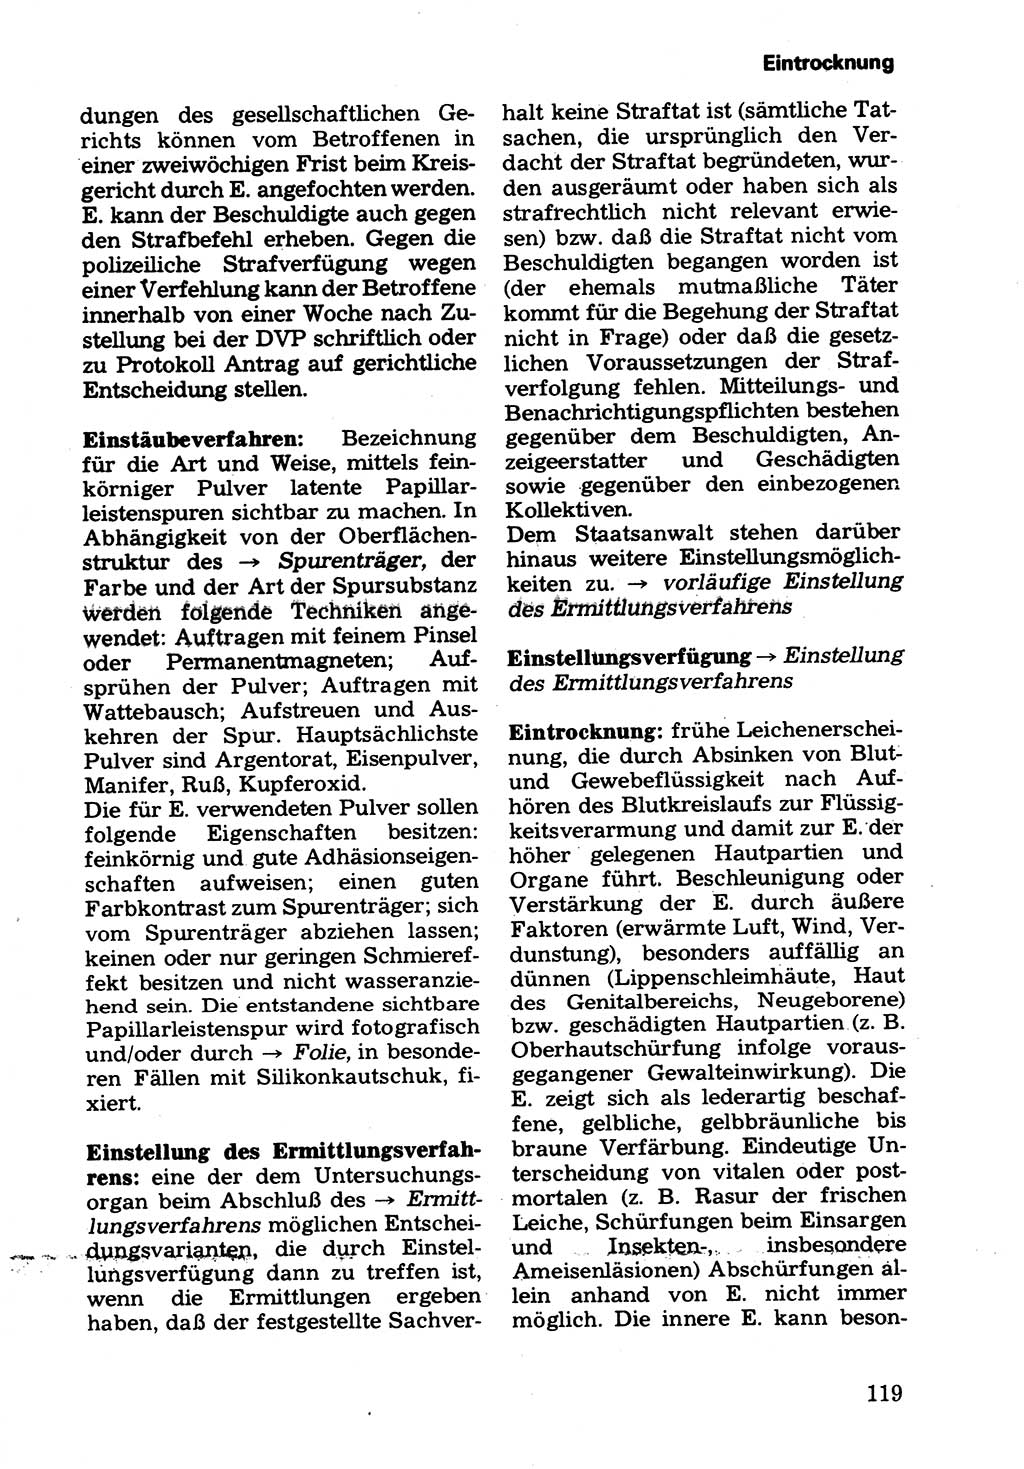 Wörterbuch der sozialistischen Kriminalistik [Deutsche Demokratische Republik (DDR)] 1981, Seite 119 (Wb. soz. Krim. DDR 1981, S. 119)